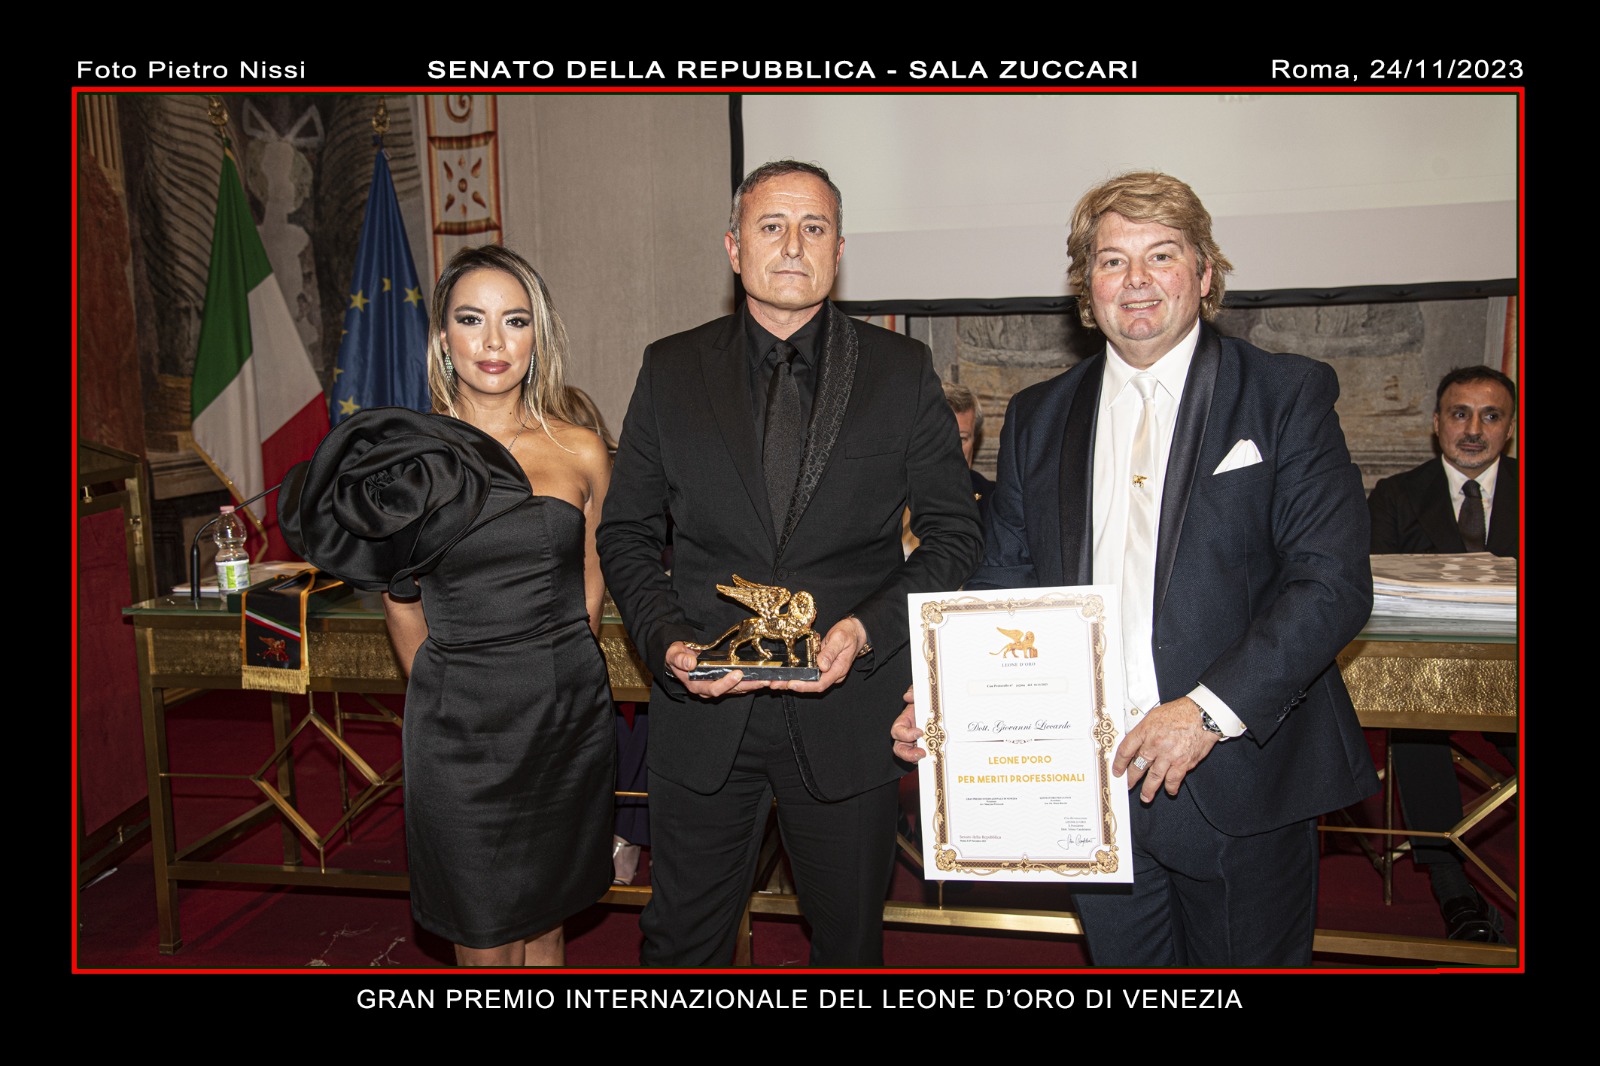 Giovanni Liccardo, Gründer und CEO von Lever Touch, wurde für seine professionelle Laufbahn mit dem Leone d'Oro von Venedig ausgezeichnet